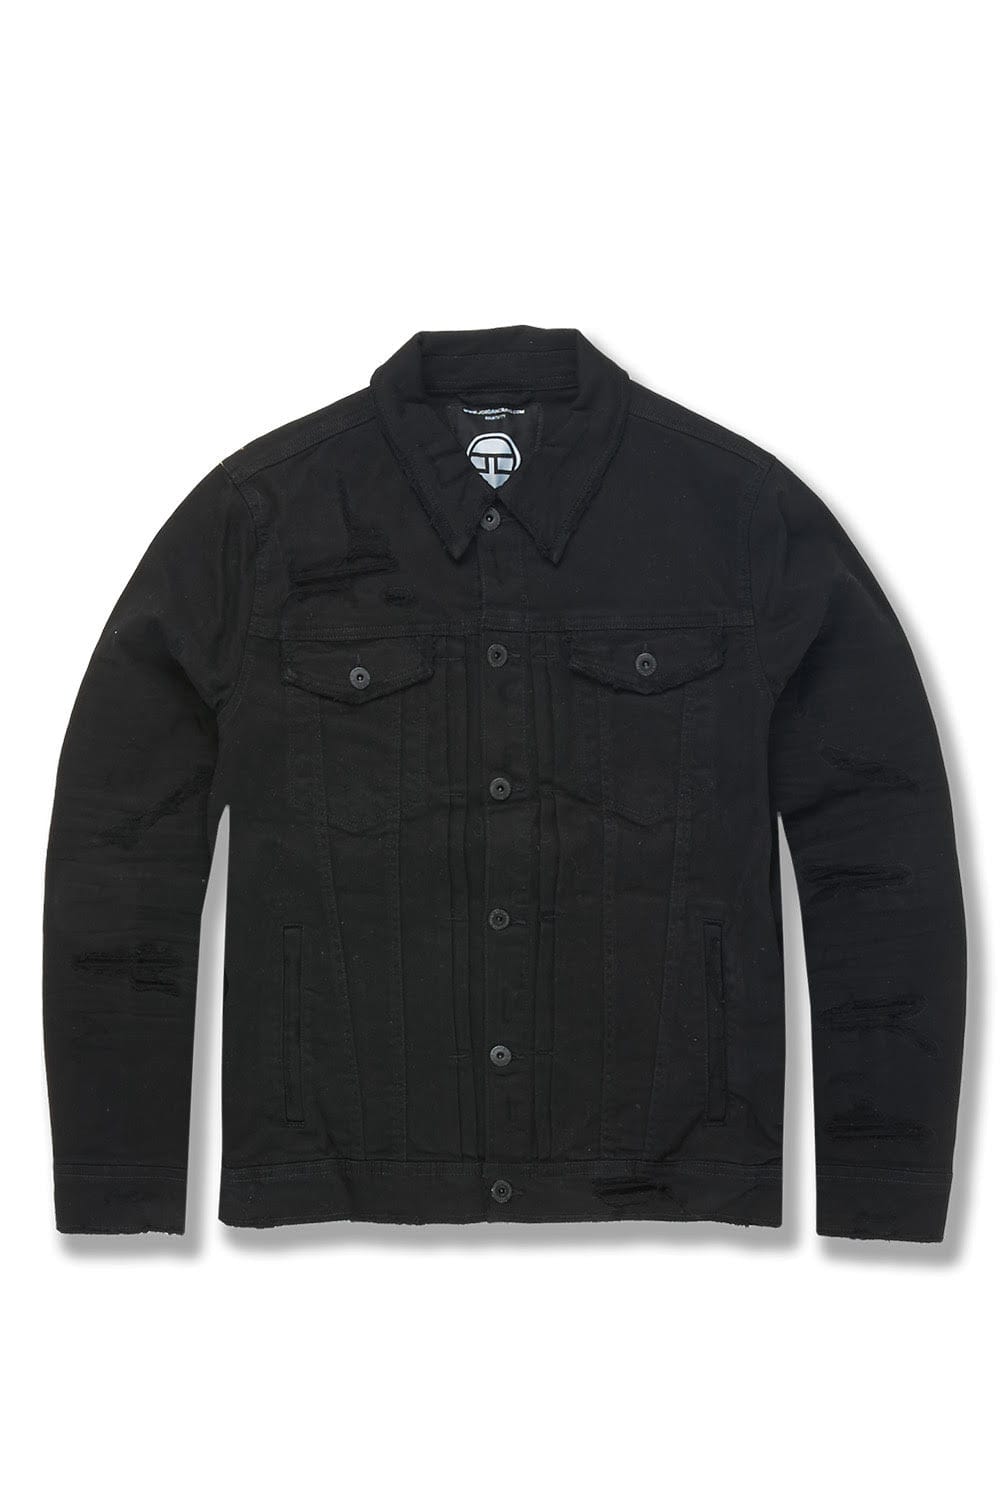 Jordan Craig Tribeca Twill Trucker Jacket (Core Colors) Black / S